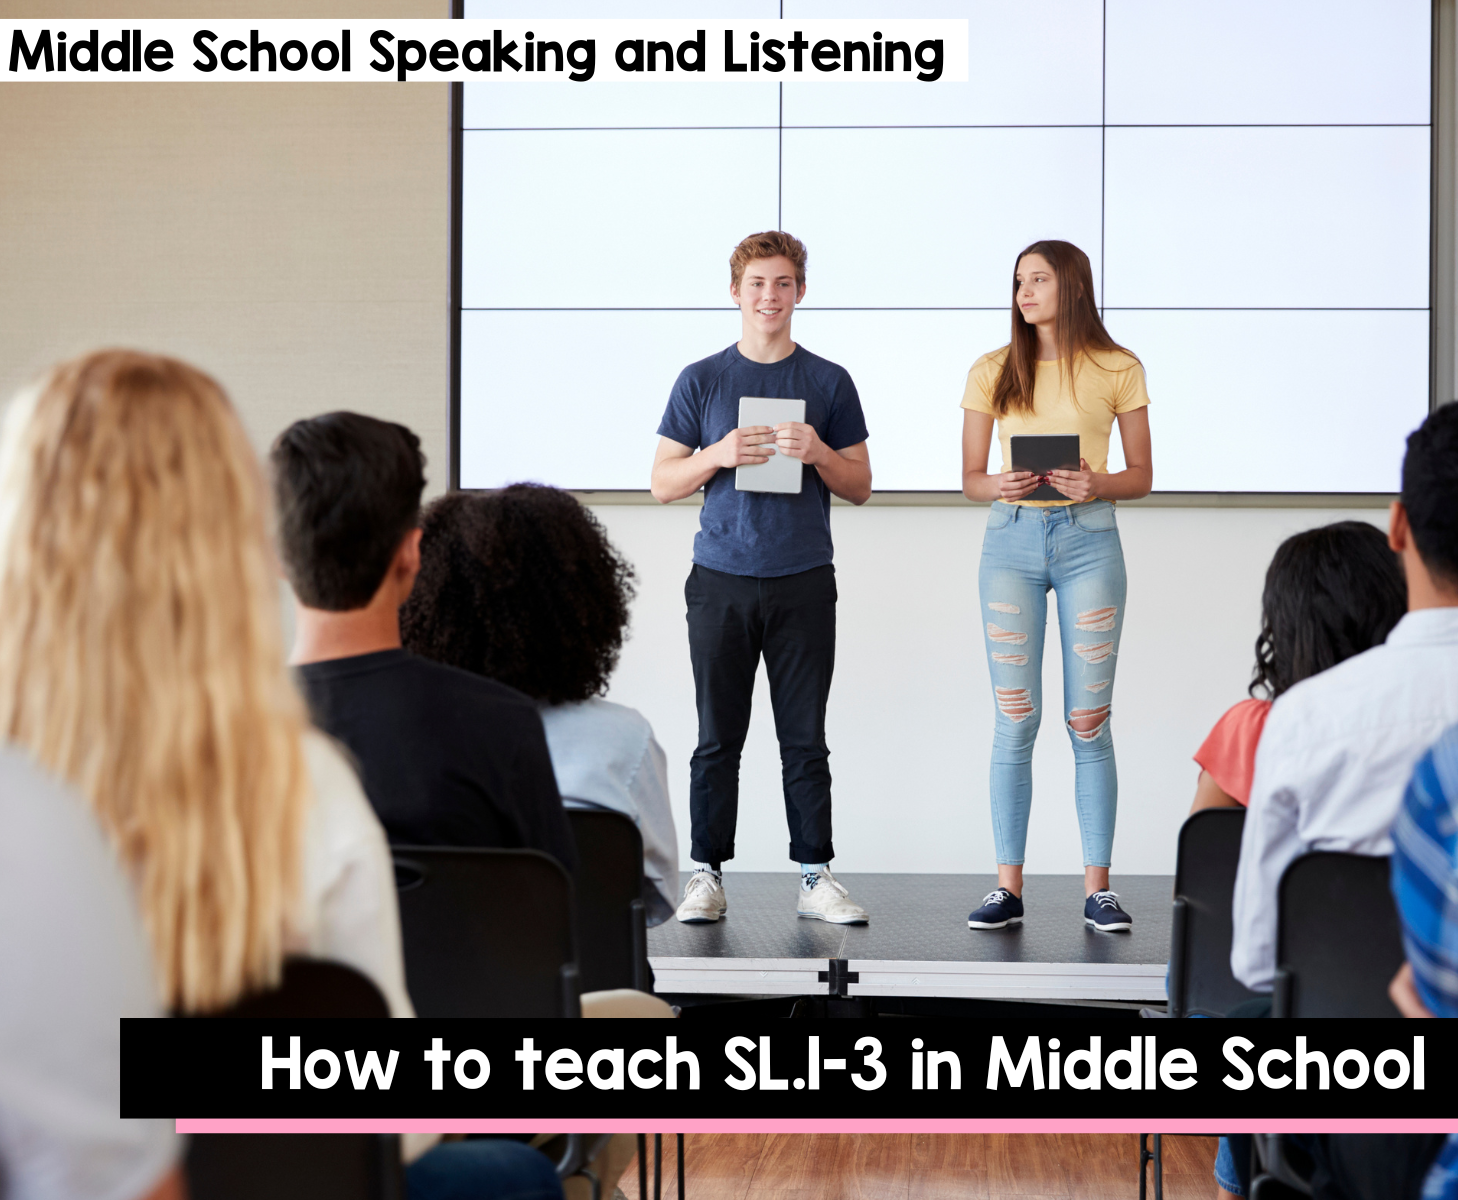 How to teach SL.1-3